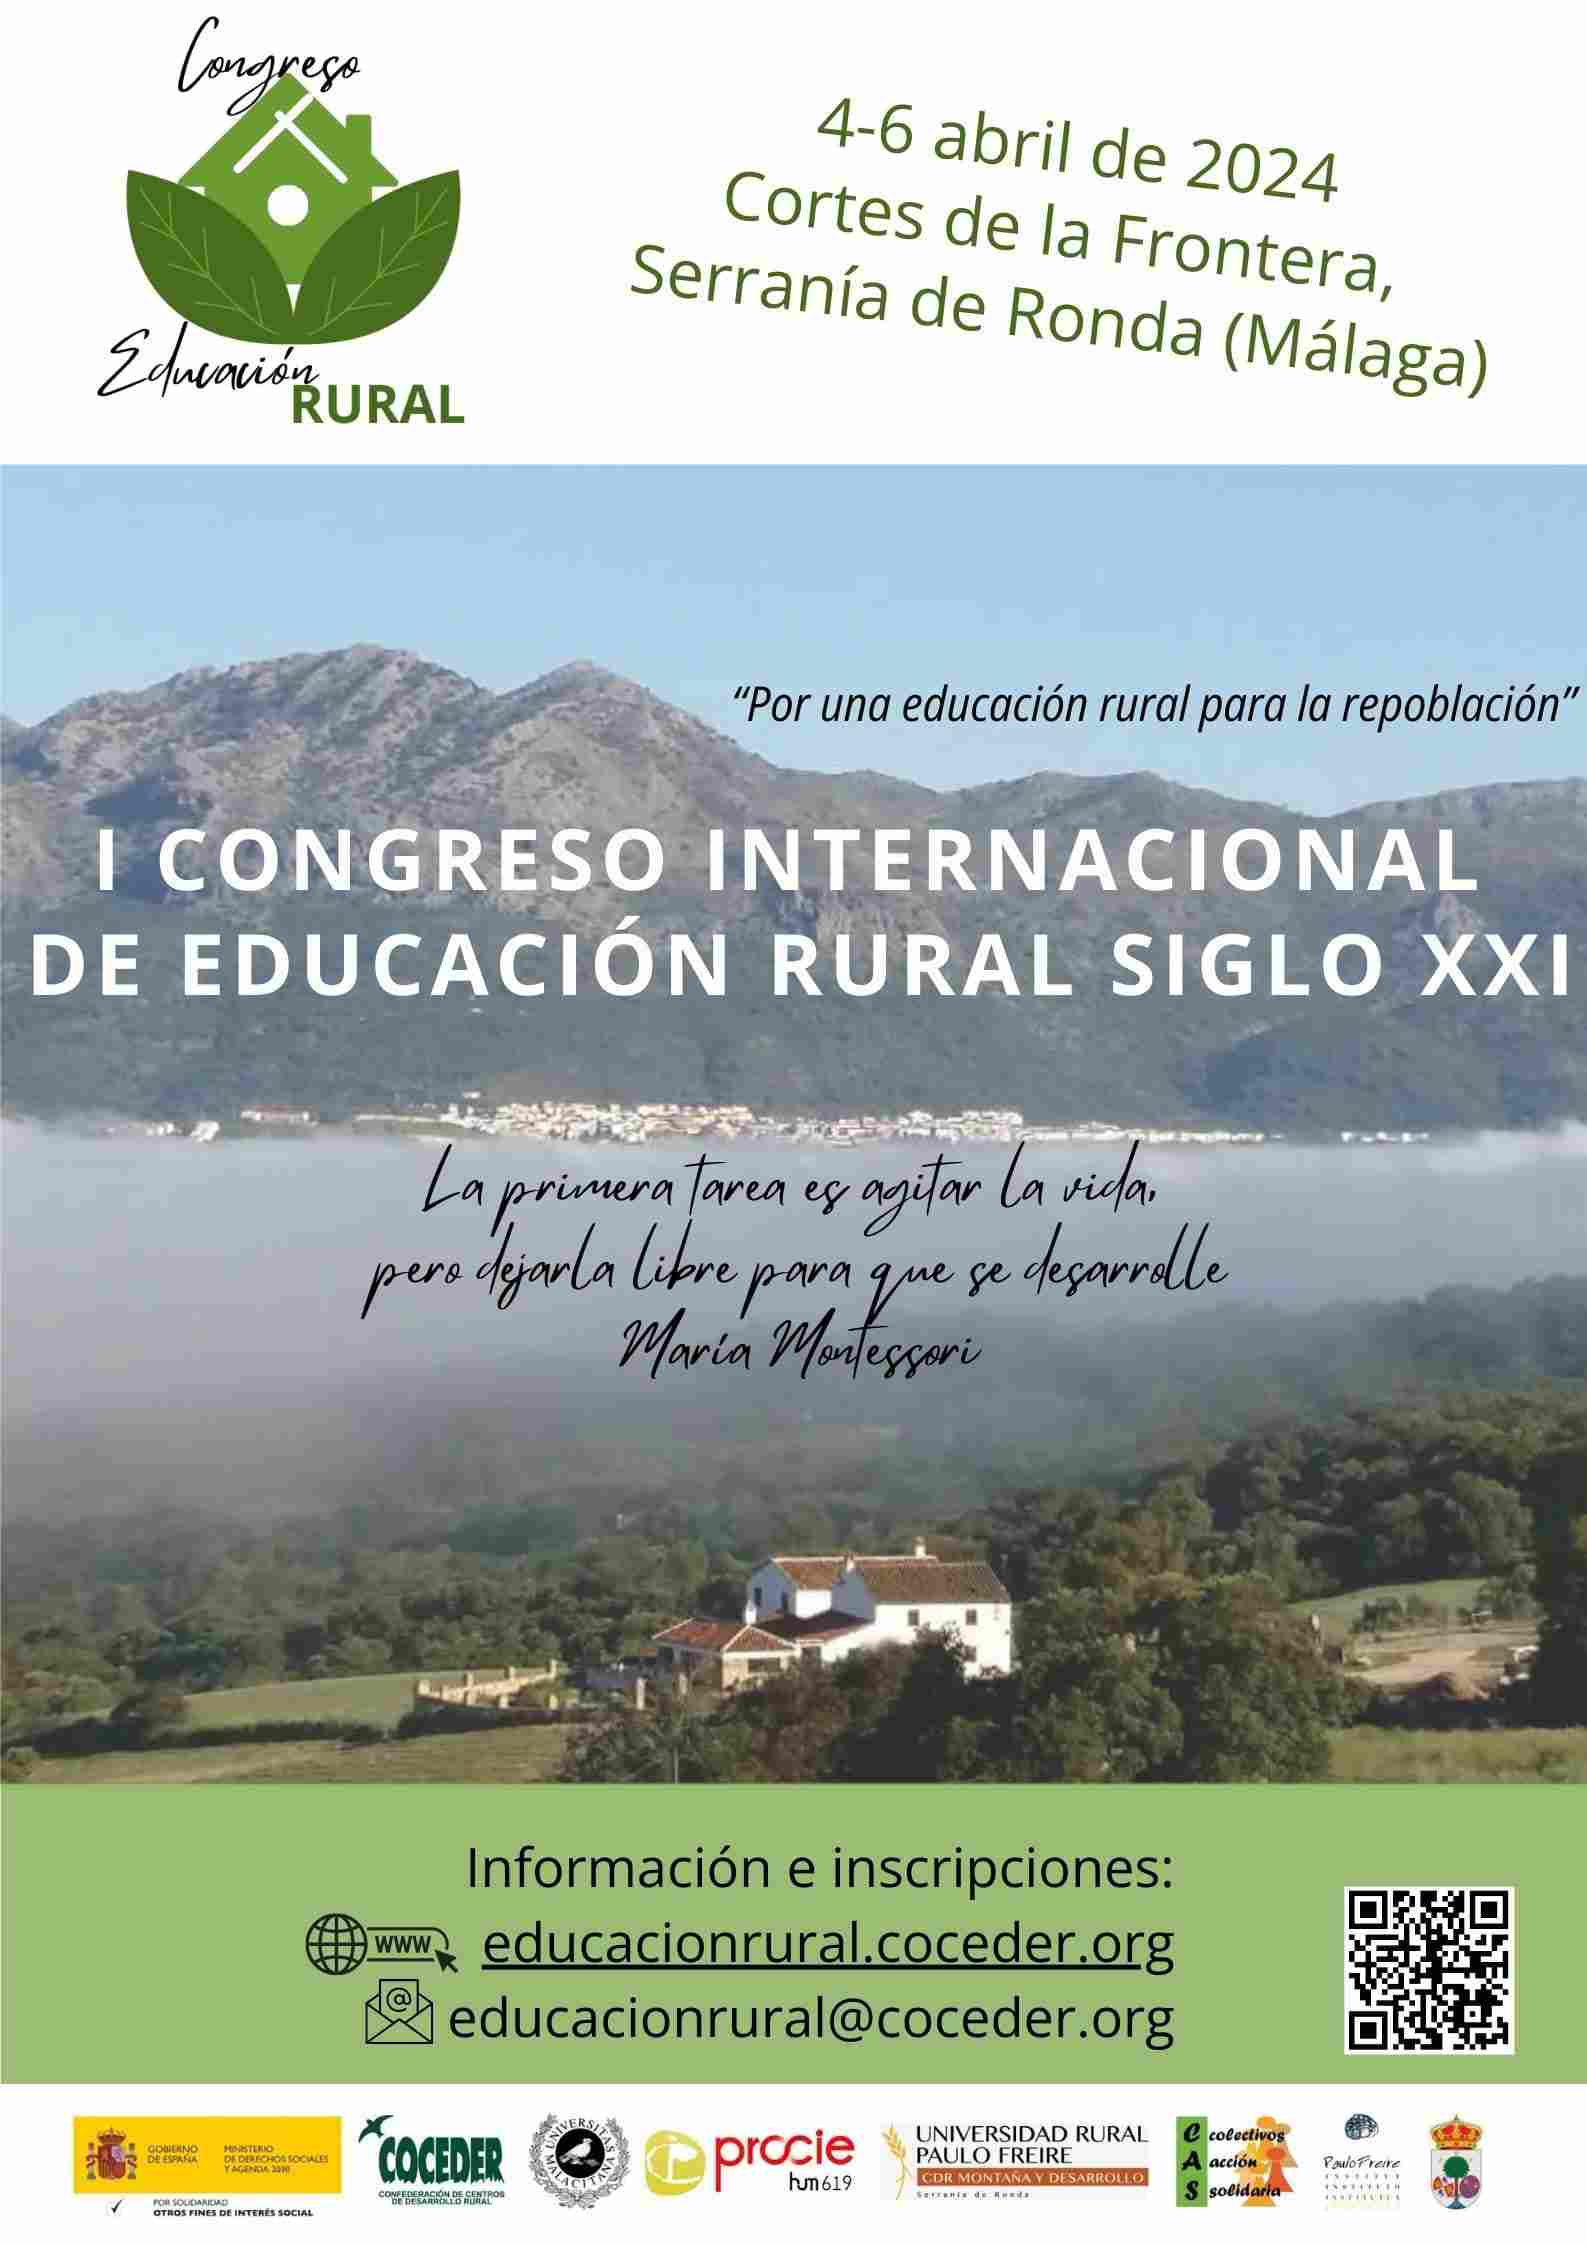 Cartel descriptivo del I congreso de educación rural tendrá lugar en la Serranía de Ronda en abril de 2024